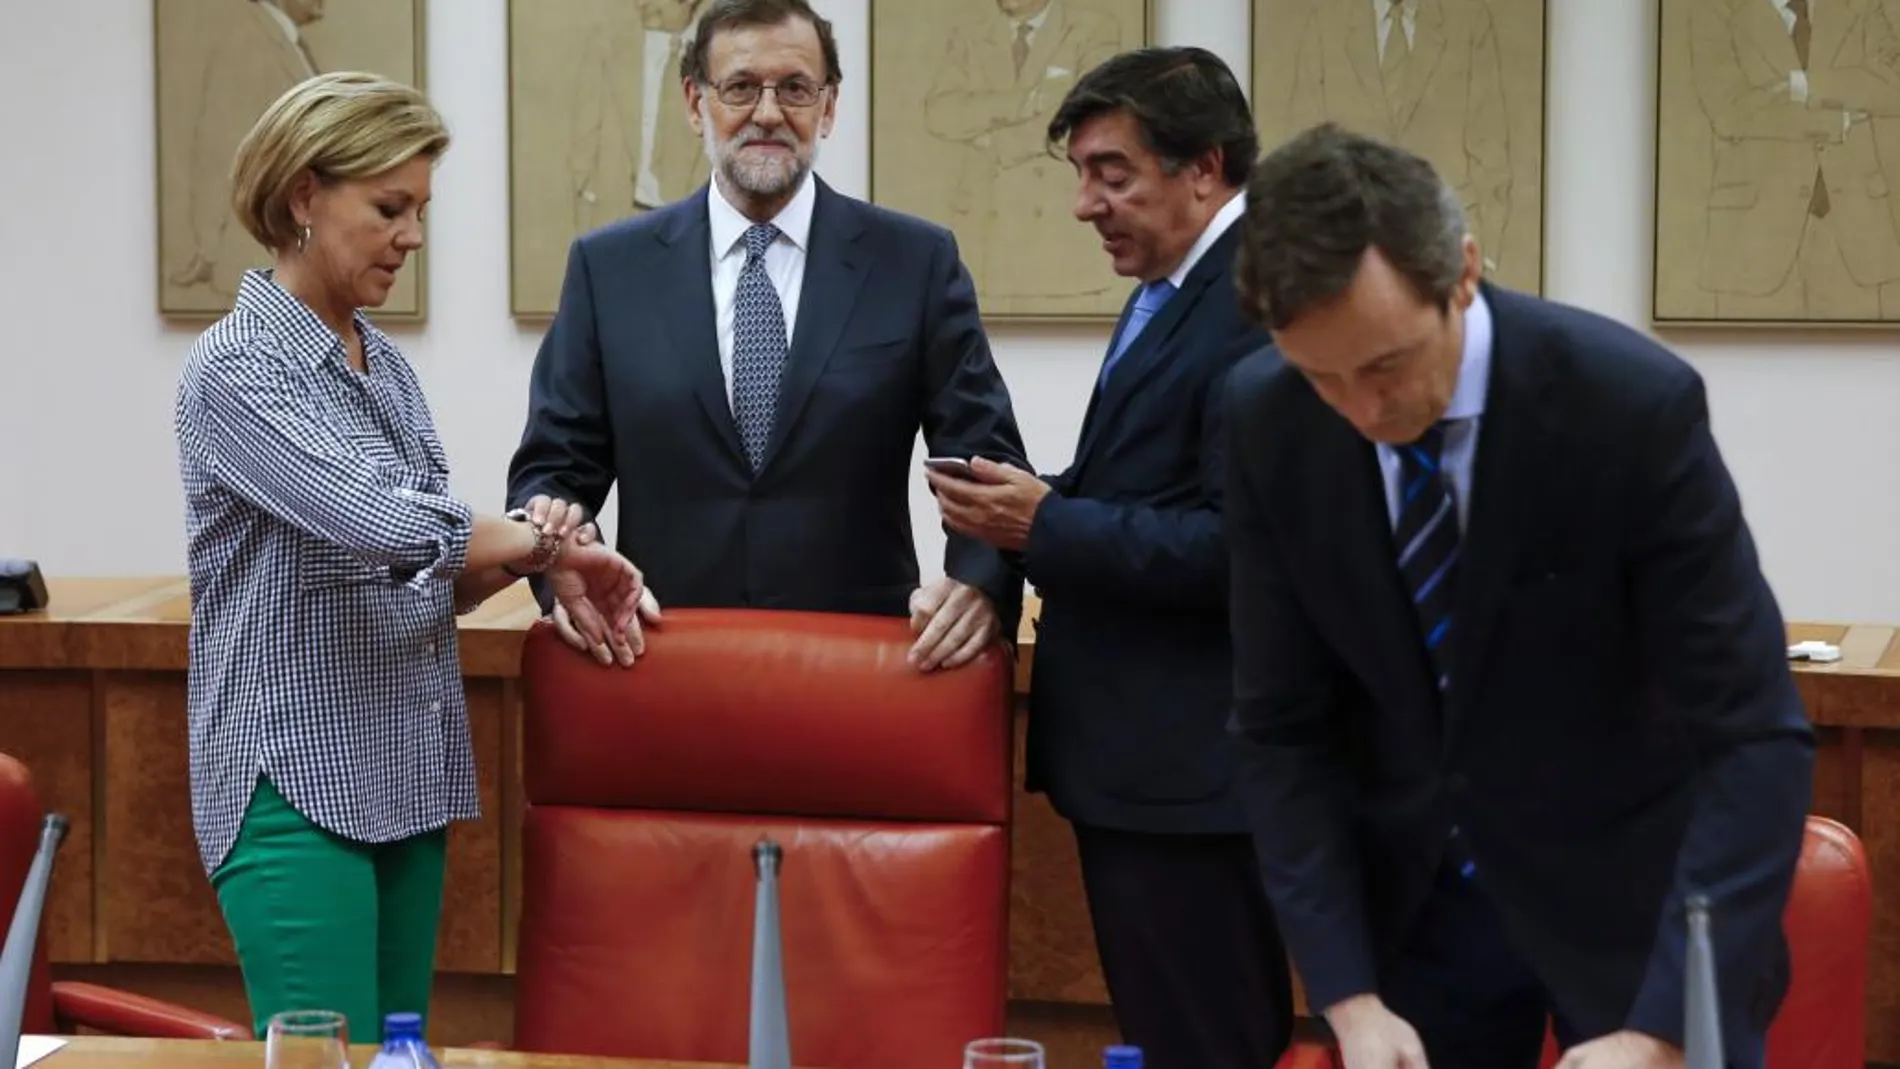 Mariano Rajoy junto a los diputados María Dolores de Cospedal y José Antonio Bermúdez de Castro, y el portavoz del grupo parlamentario, Rafael Hernando